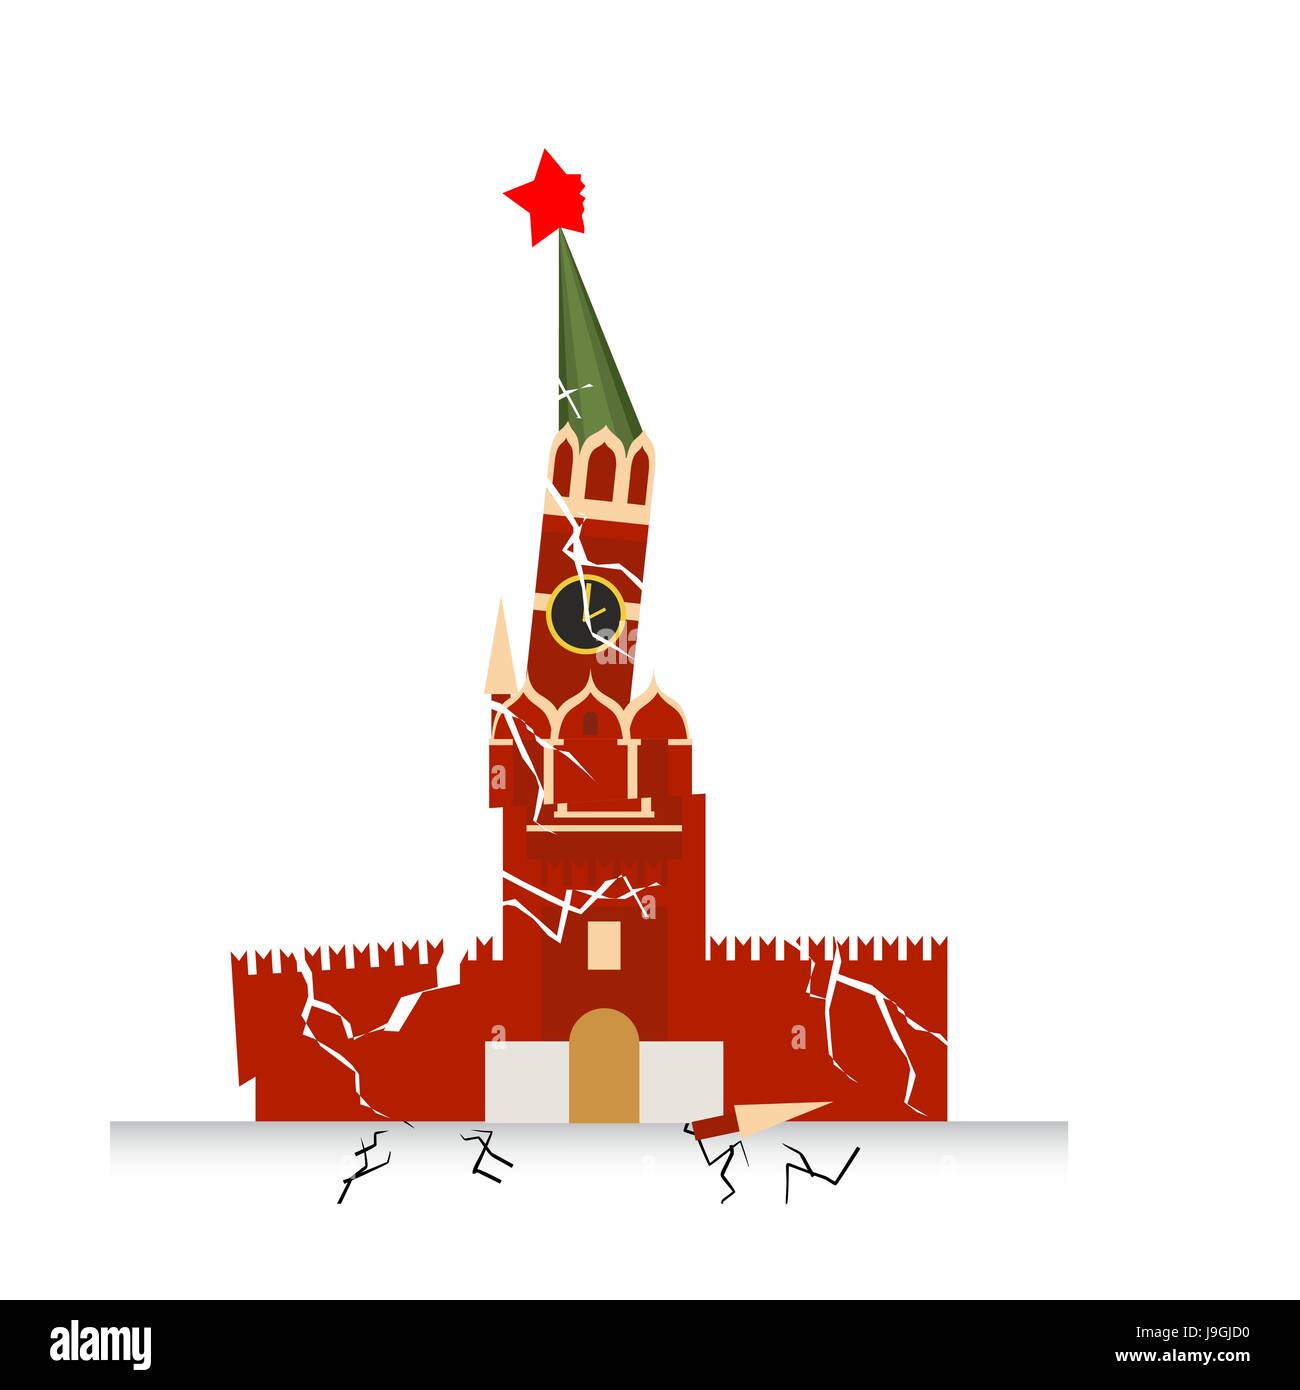 Moskauer Kreml Zerstörung. Erdschluss Erdbeben. Zerstörung von Points of Interest in Russland. Russische nationale Architektur Gebäude auf dem Roten Platz. Stock Vektor